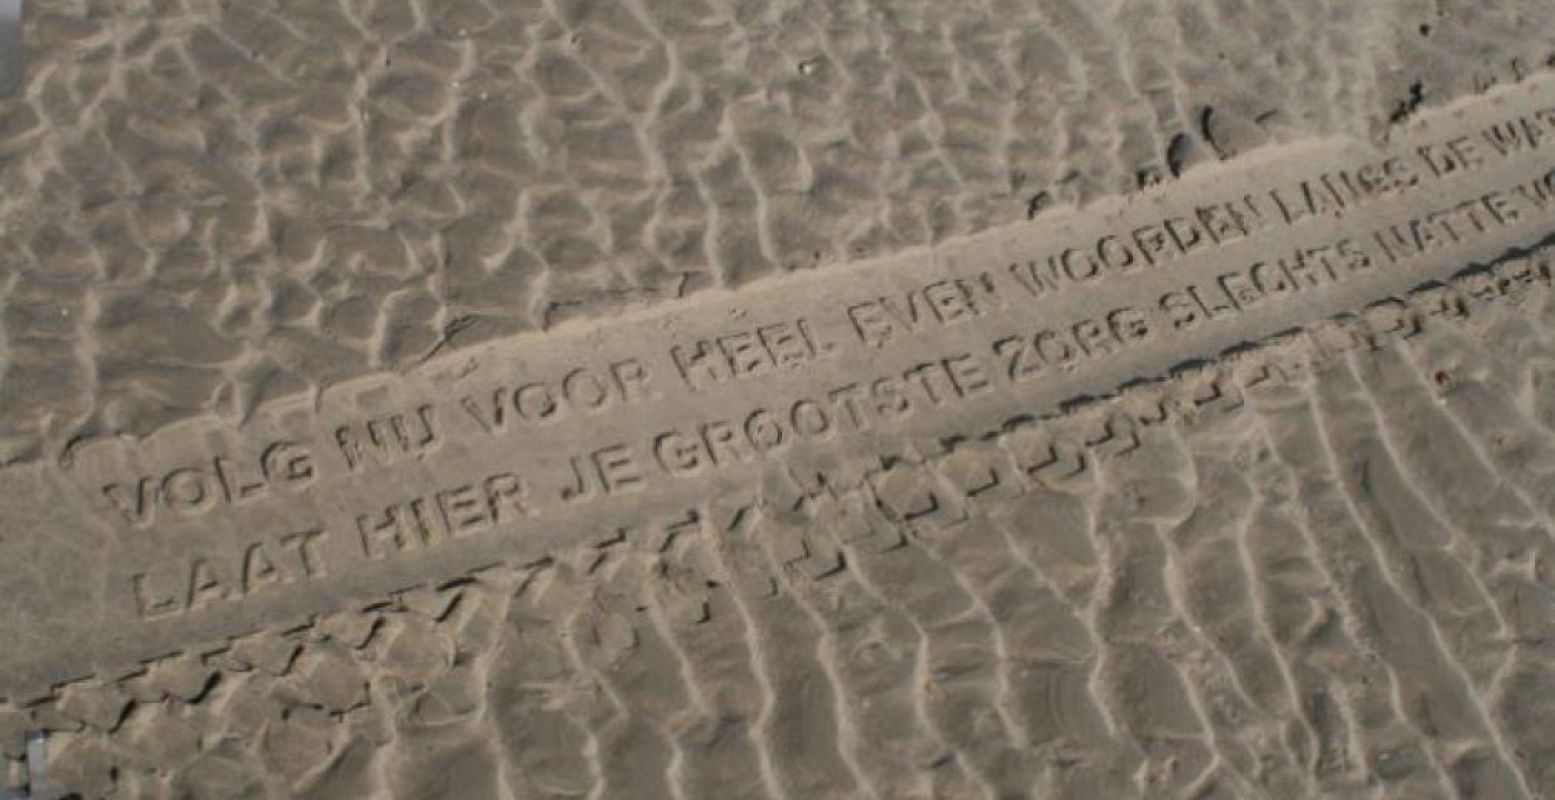 Trek met de Vliehorstexpress over het strand naar het drenkelingenhuisje, terwijl achter je een gedicht in het zand ontstaat. Elk jaar maken de banden van de Vliehorstexpress een ander gedicht. Foto: DagjeWeg.NL